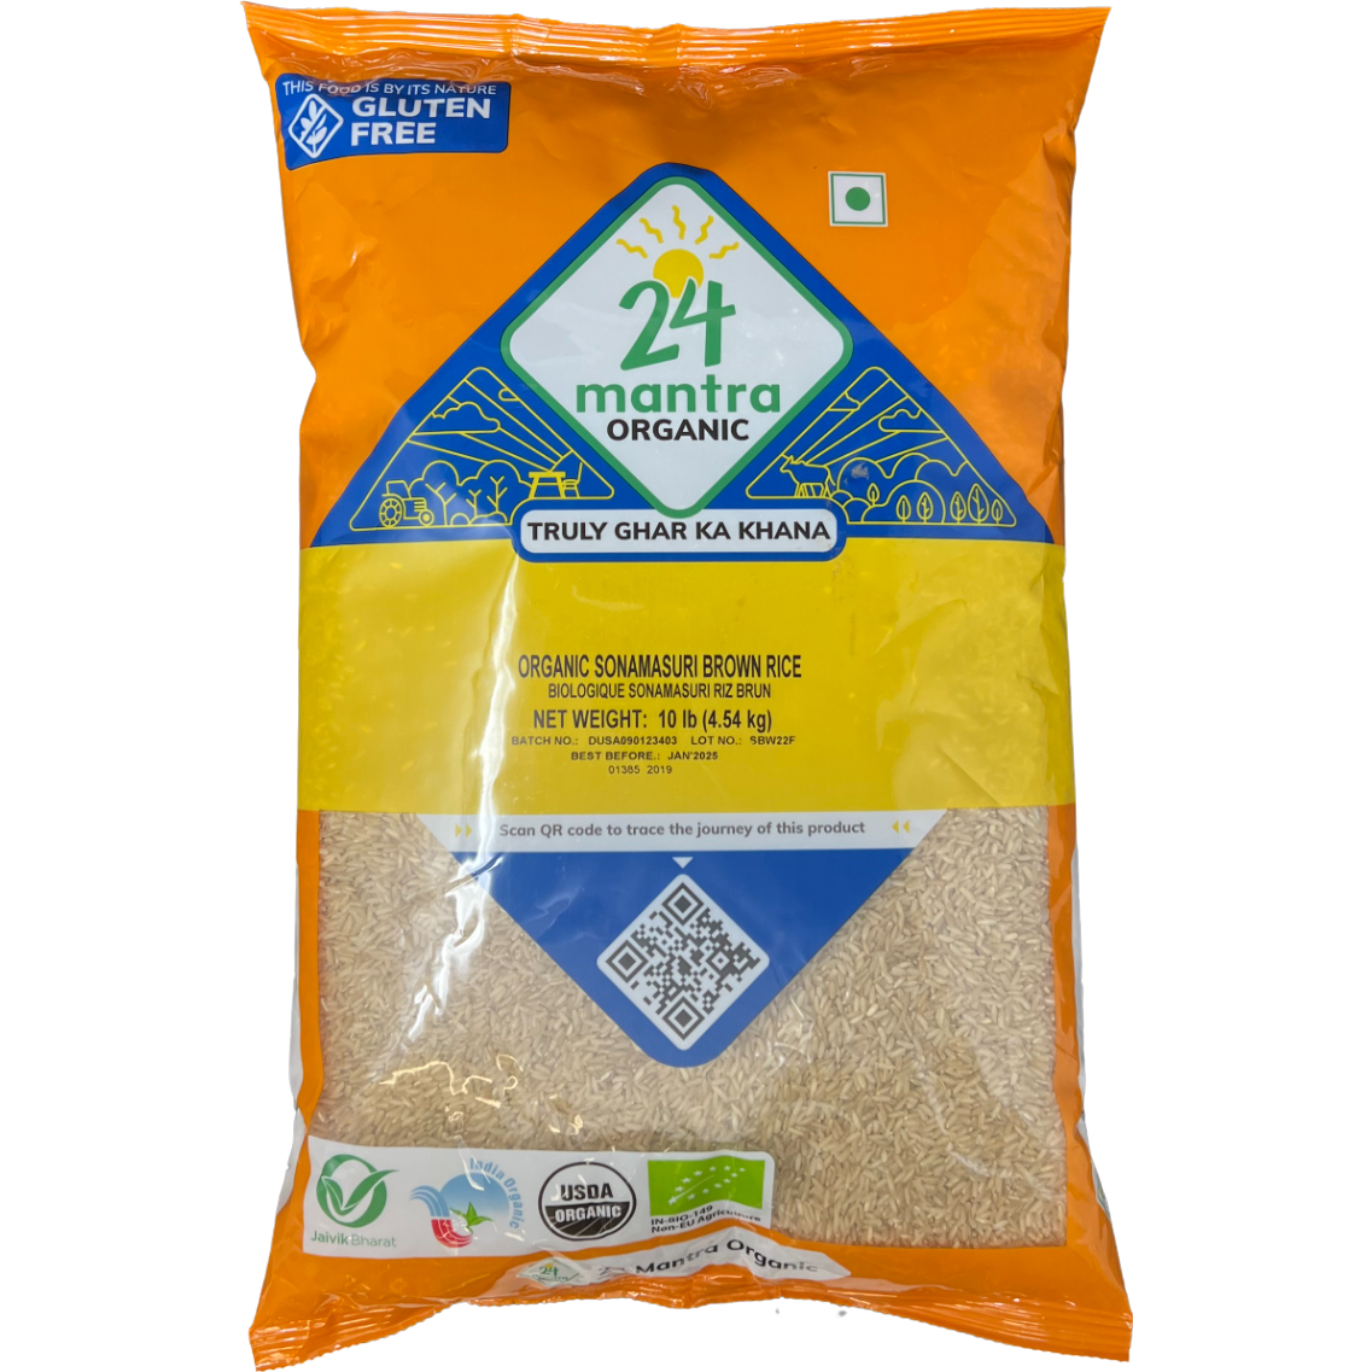 Case of 4 - 24 Mantra Organic Sonamasuri Brown Rice - 10 Lb (4.5 Kg)